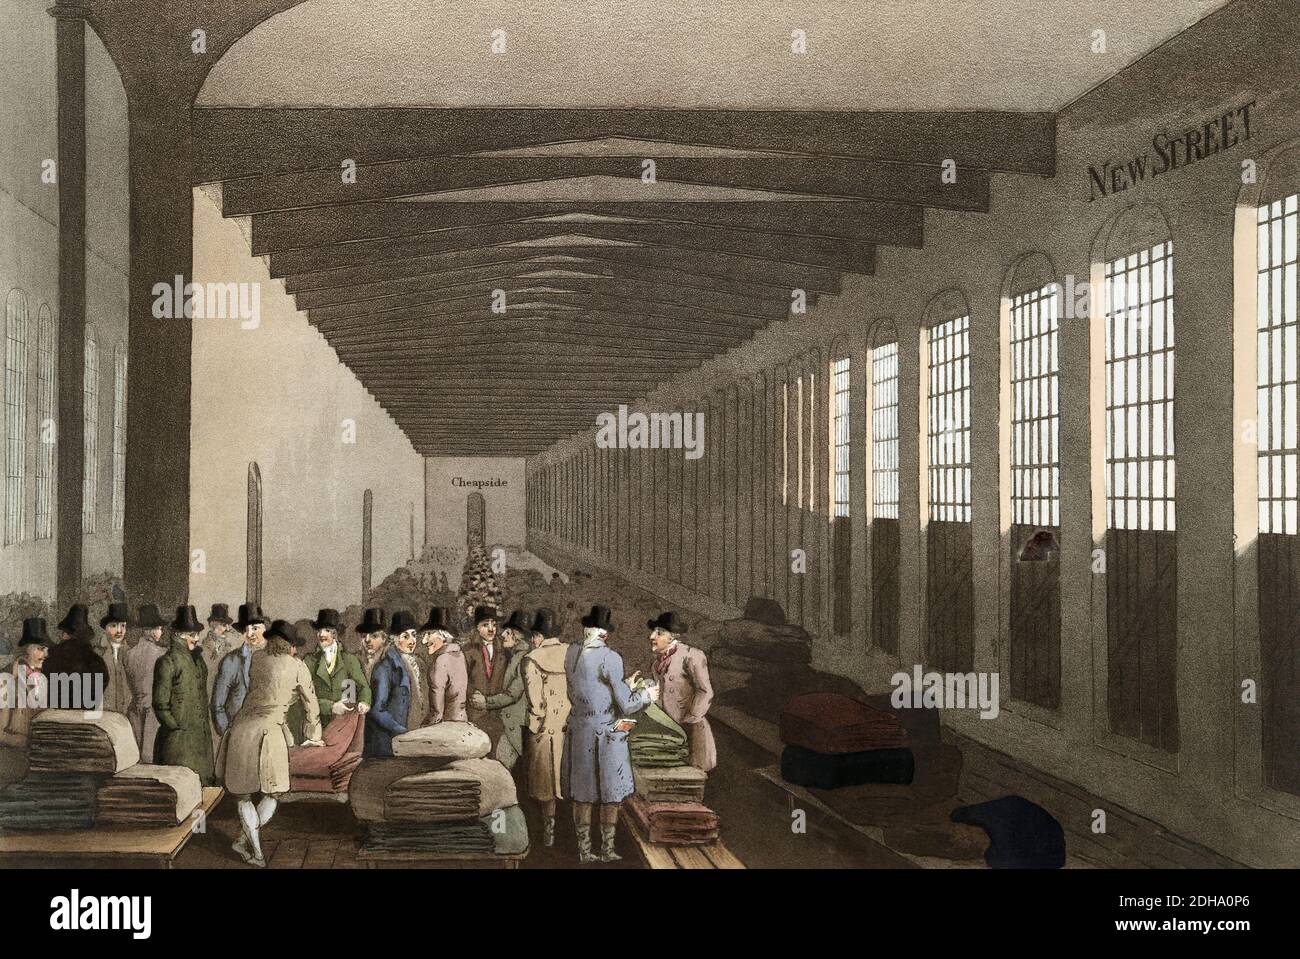 Die Tuchhalle in Leeds, 19. Jahrhundert. Der Kauf und Verkauf von Stoff wurde hier durchgeführt. Nach einem Stich von R. Havell, der 1814 nach einem Werk von George Walker herausgegeben wurde. Stockfoto